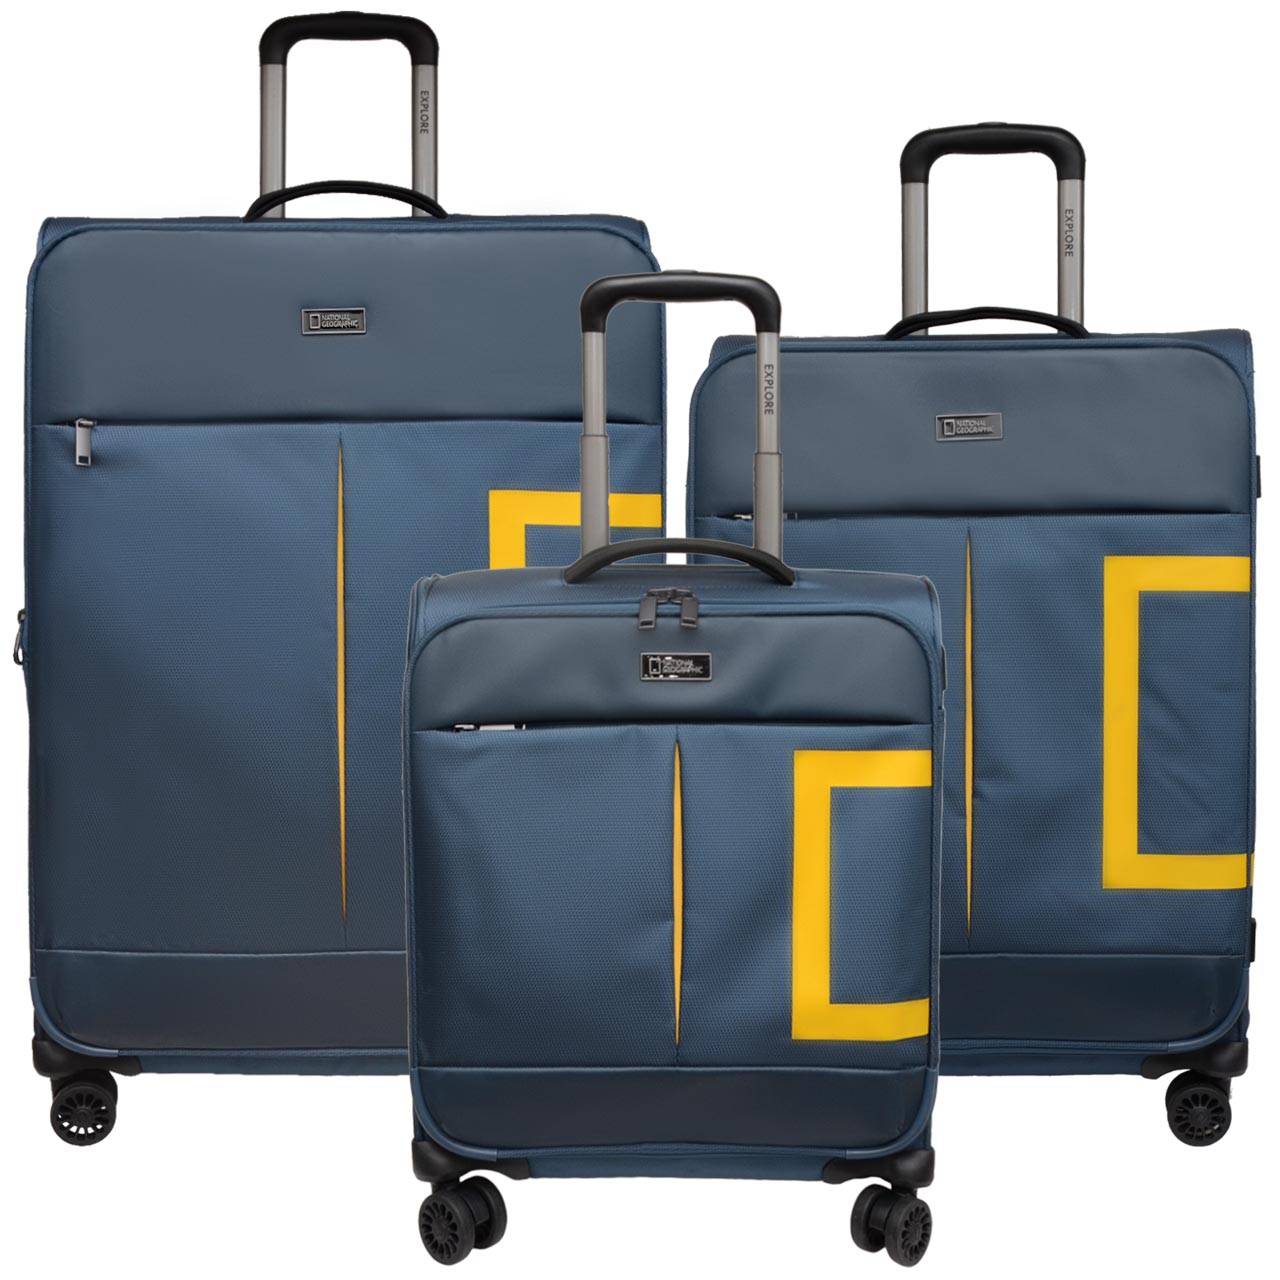 مجموعه سه عددی چمدان نشنال جیوگرافیک مدل NG10 S - 700479